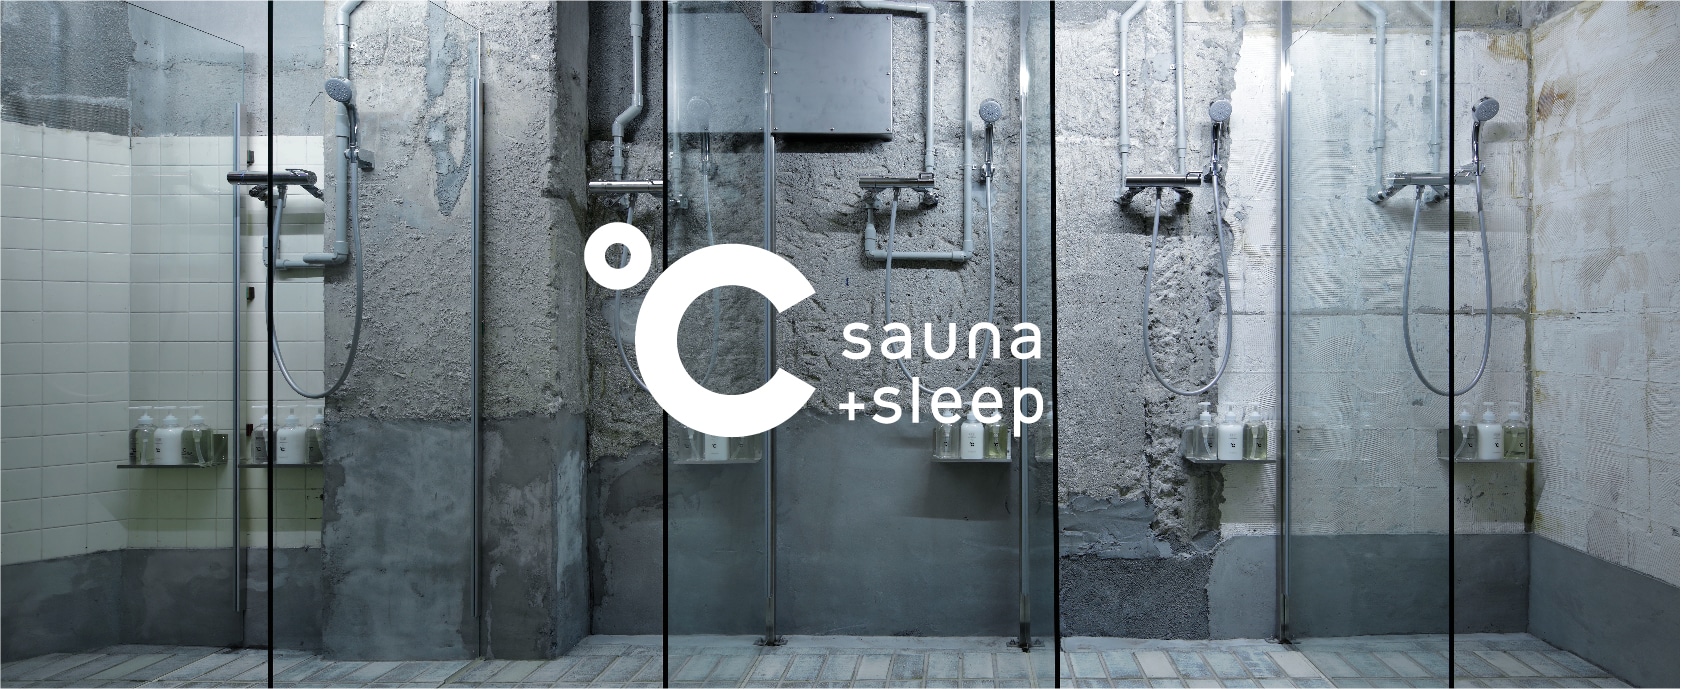 °C sauna+sleep